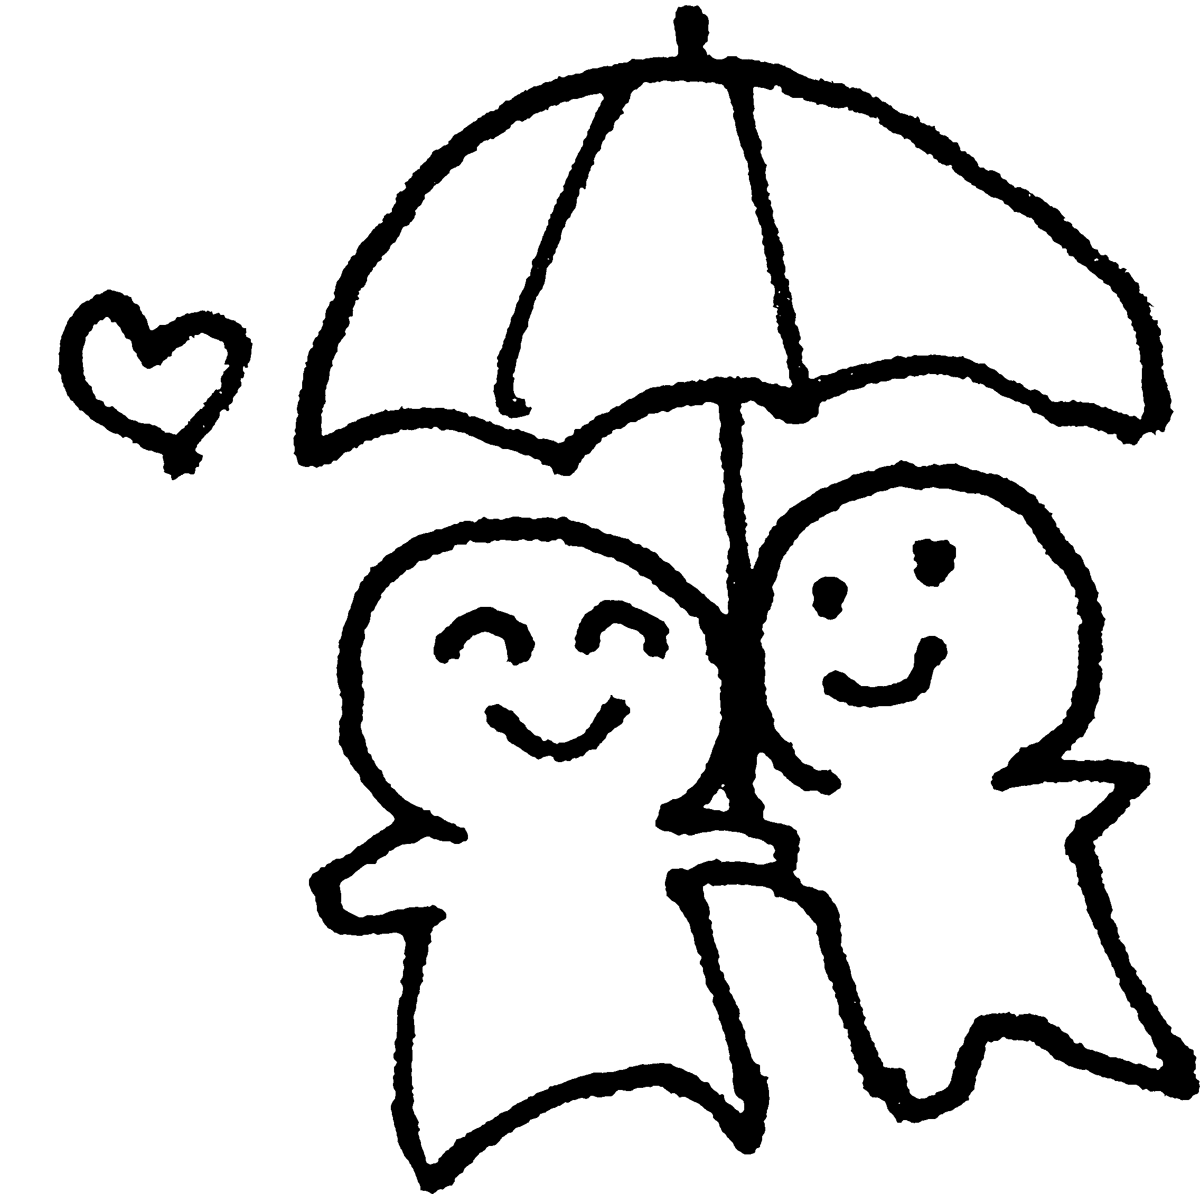 相合い傘のイラスト / sharing an umbrella Illustration